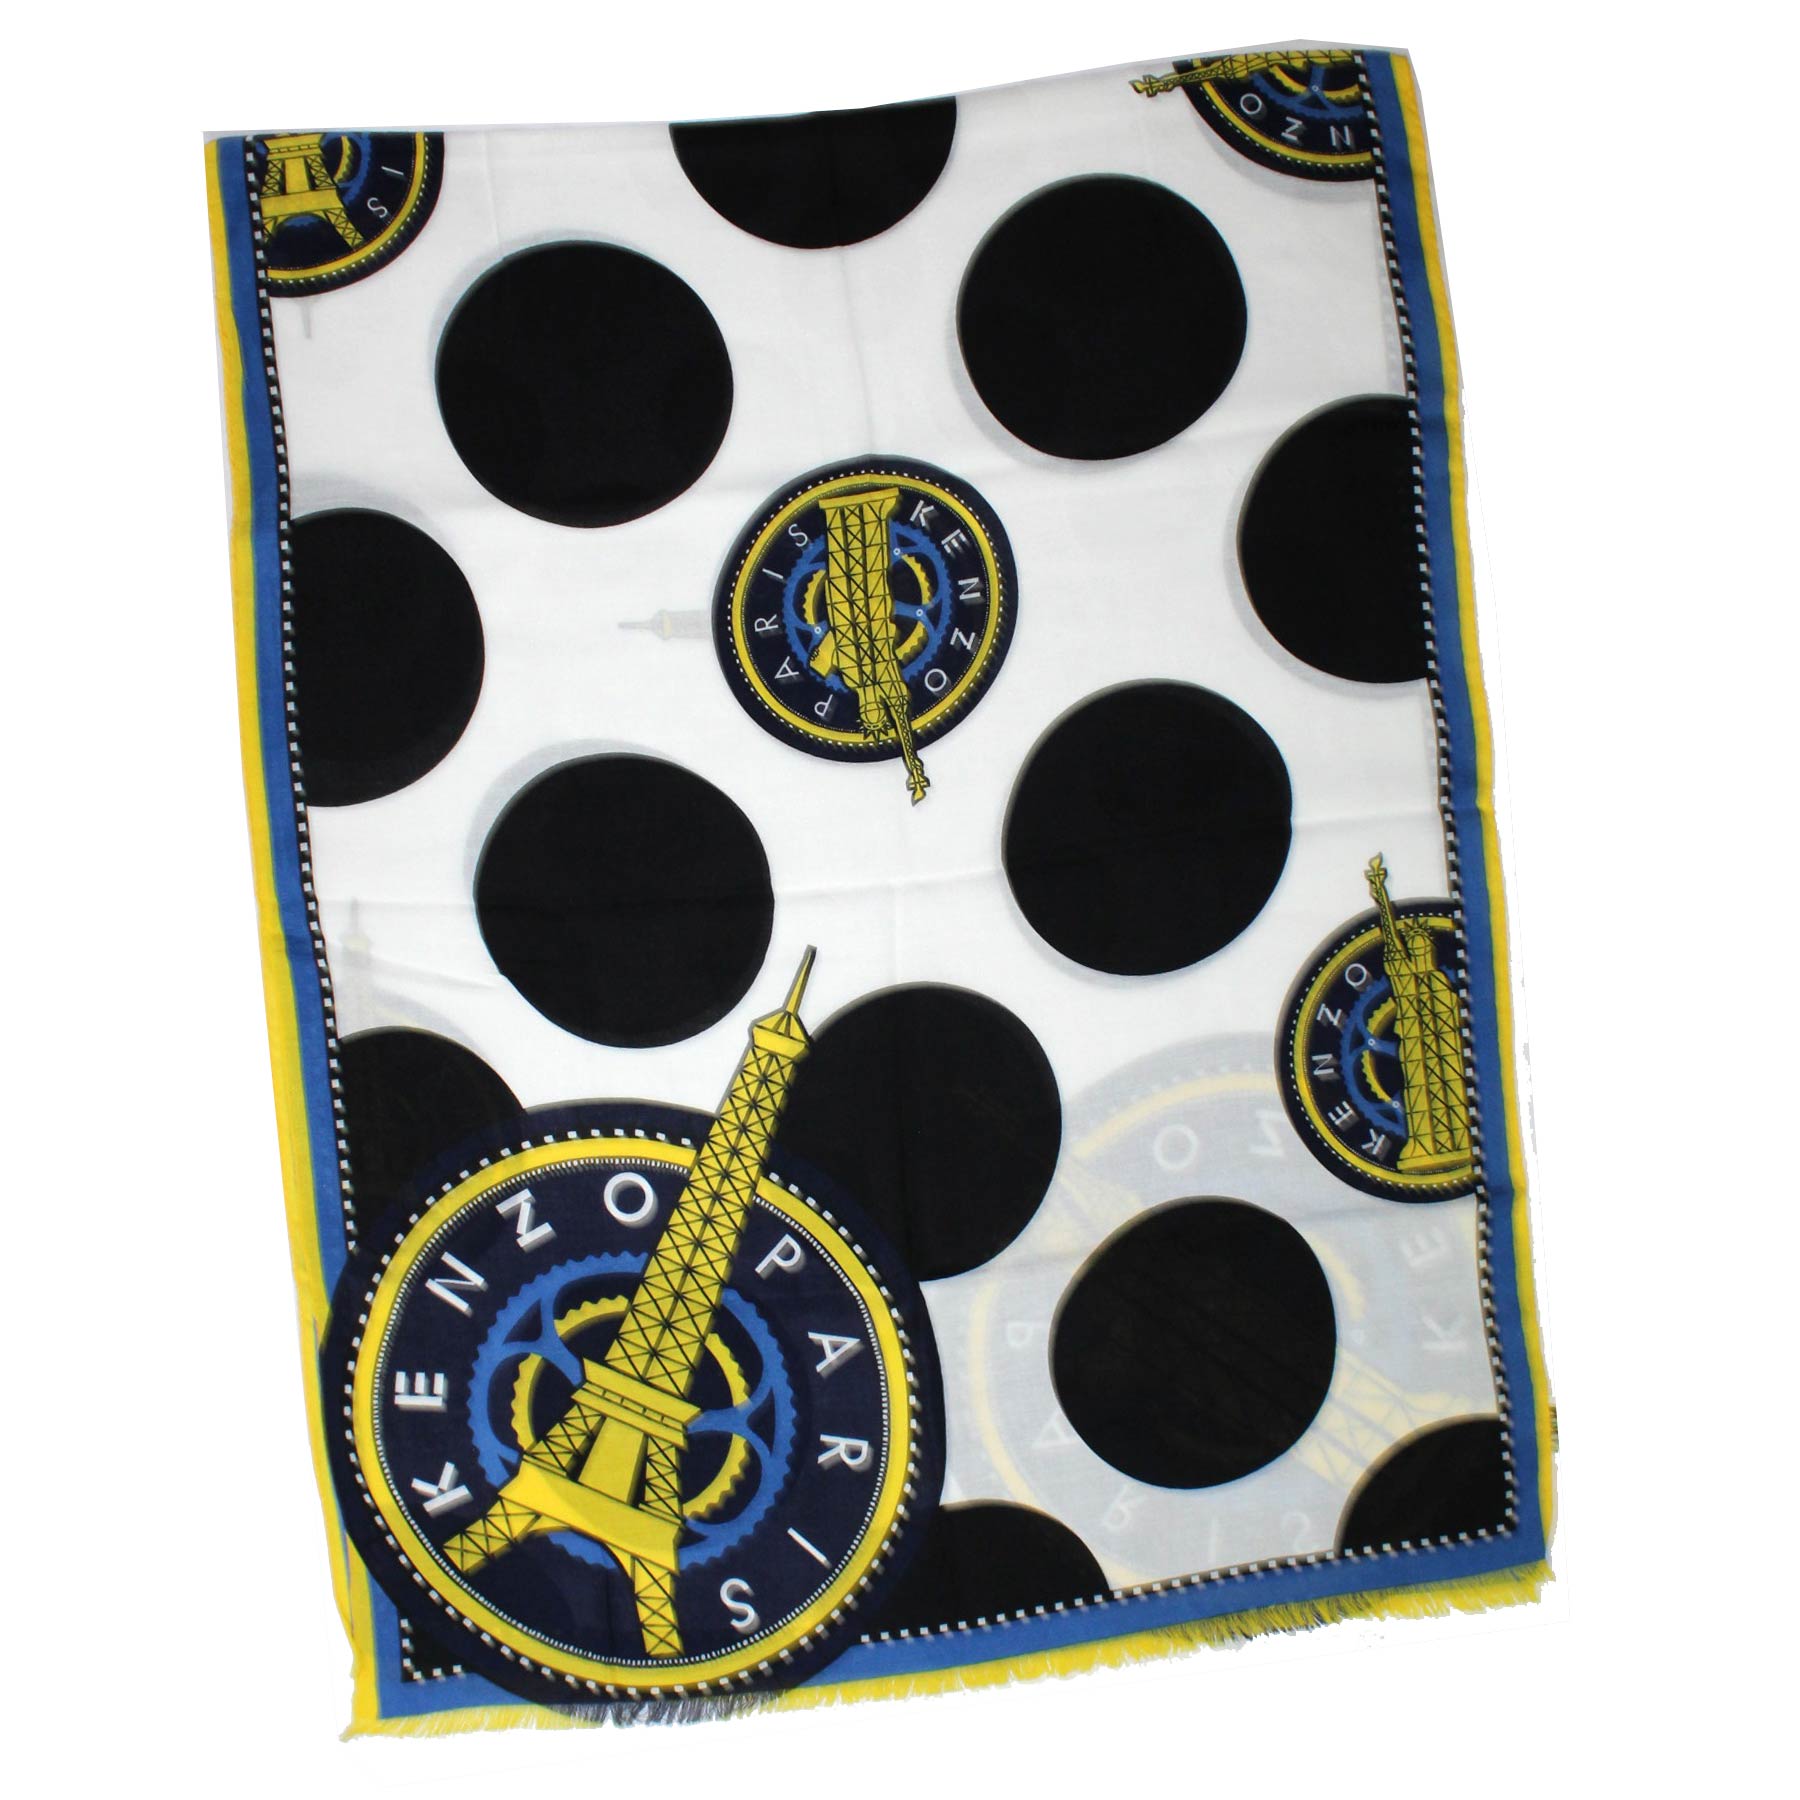 Kenzo Scarf Royal Blue Yellow Polka Dot Design - Cotton Blend Shawl